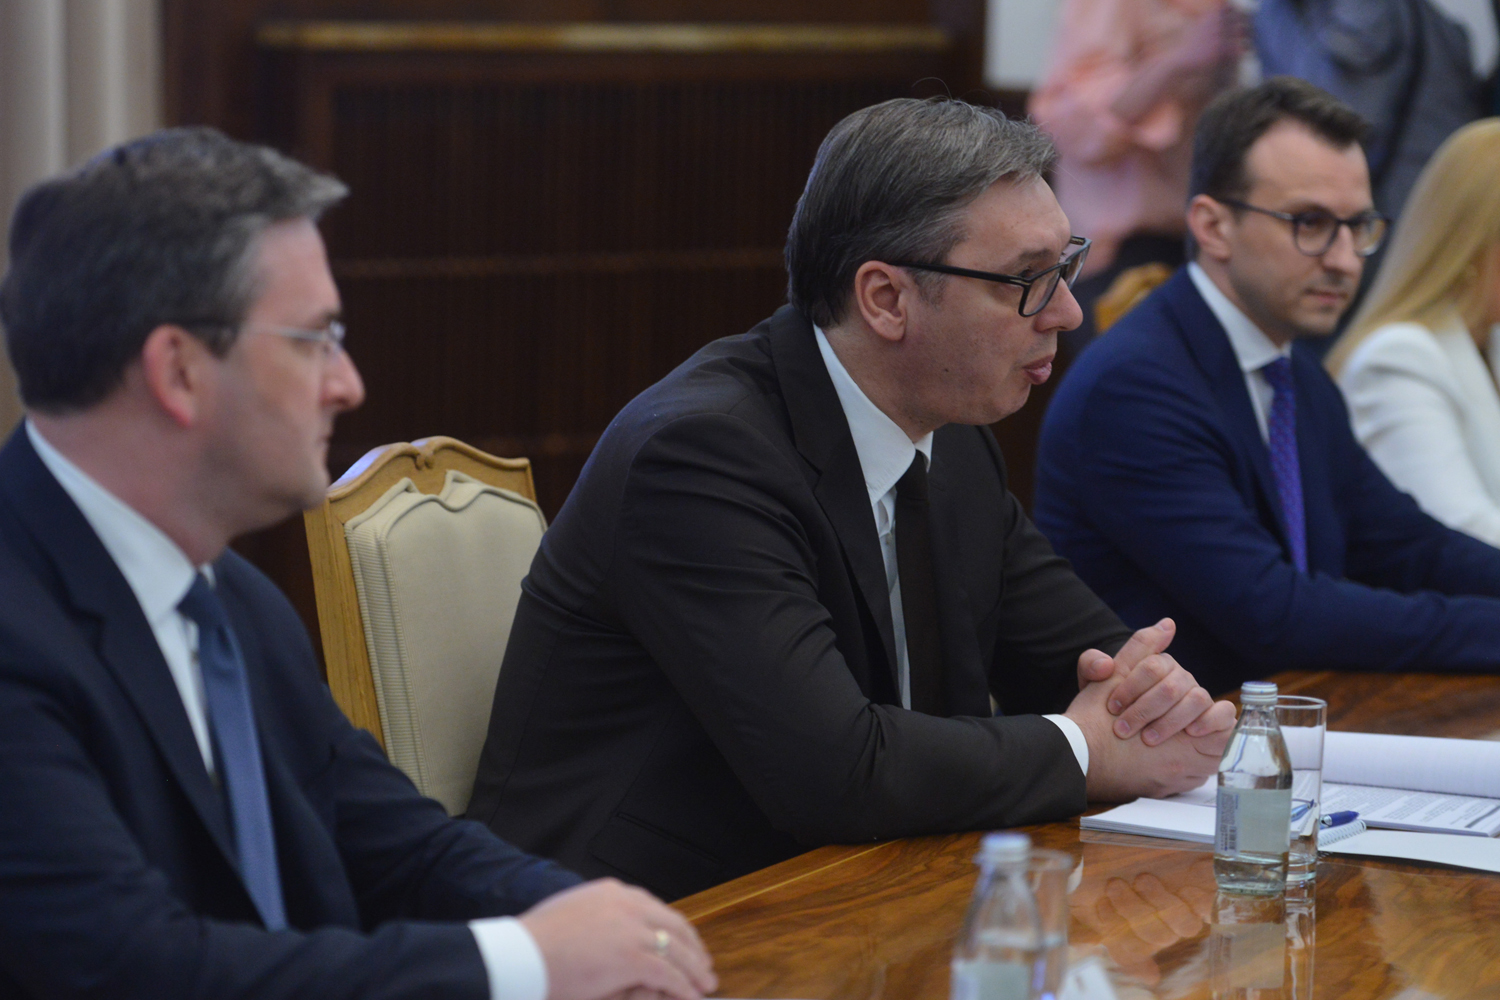 PREDSEDNIK SRBIJE NA VAŽNOM SASTANKU Aleksandar Vučić ugostio je pomoćnicu državnog sekretara SAD (FOTO)